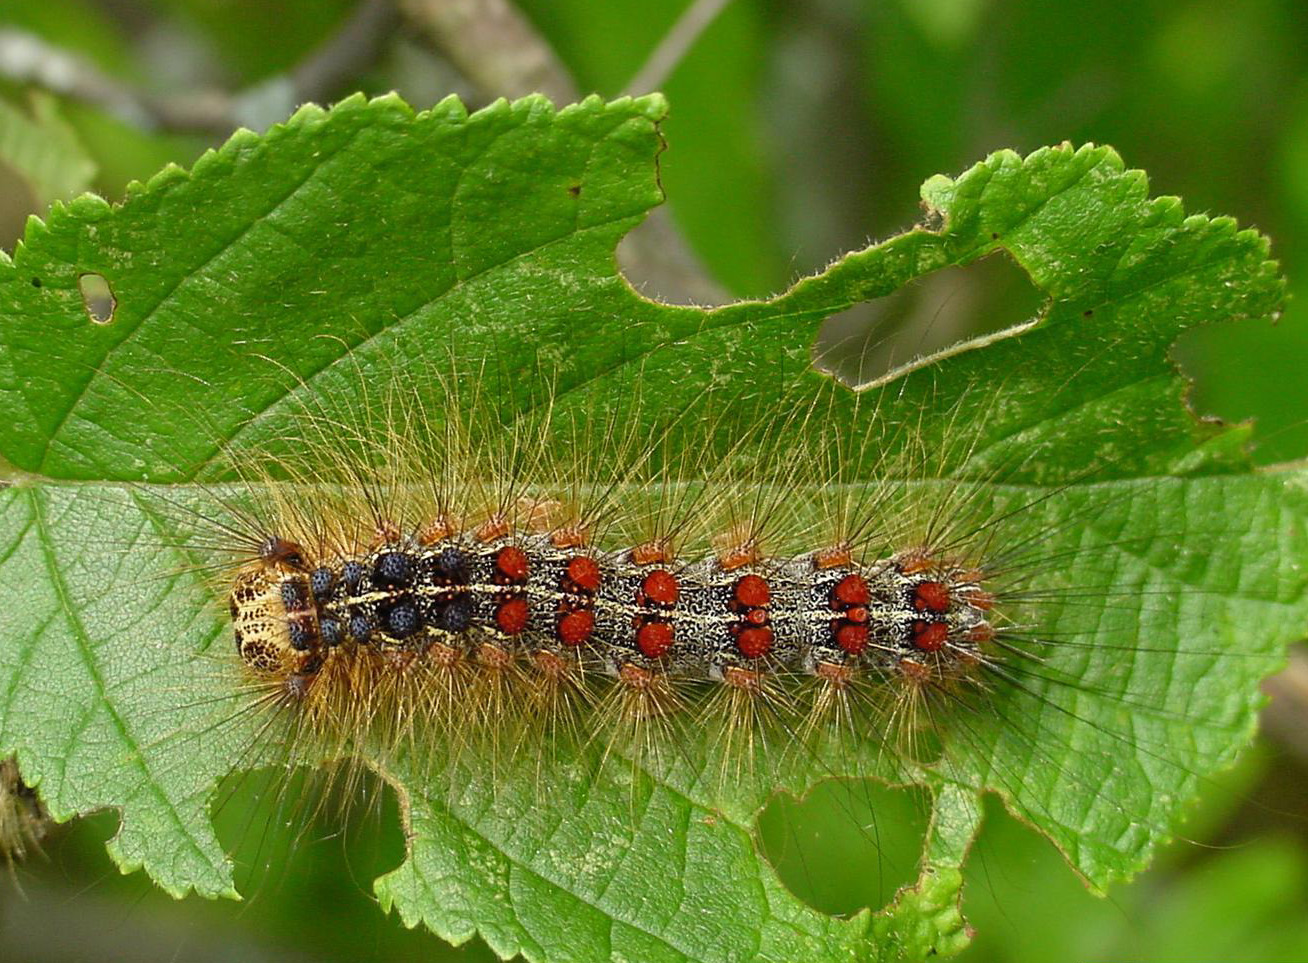 Gypsy moth larva and feeding damage